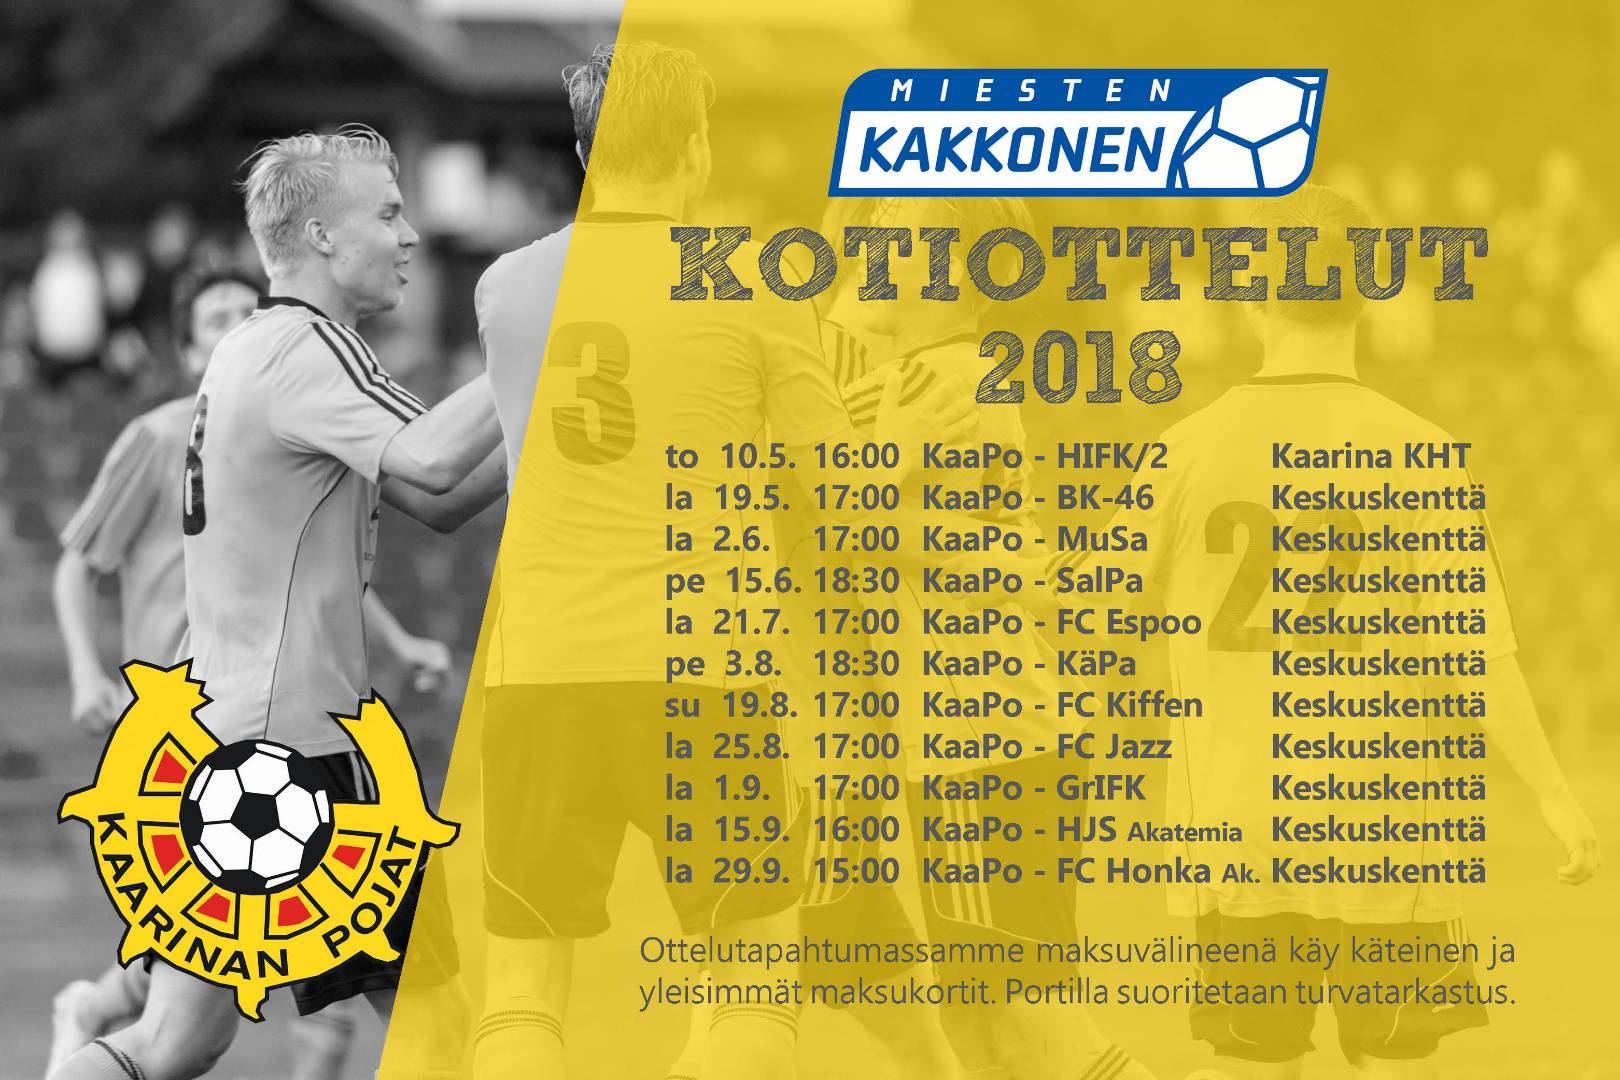 Miesten Kakkosen otteluohjelma on valmis!